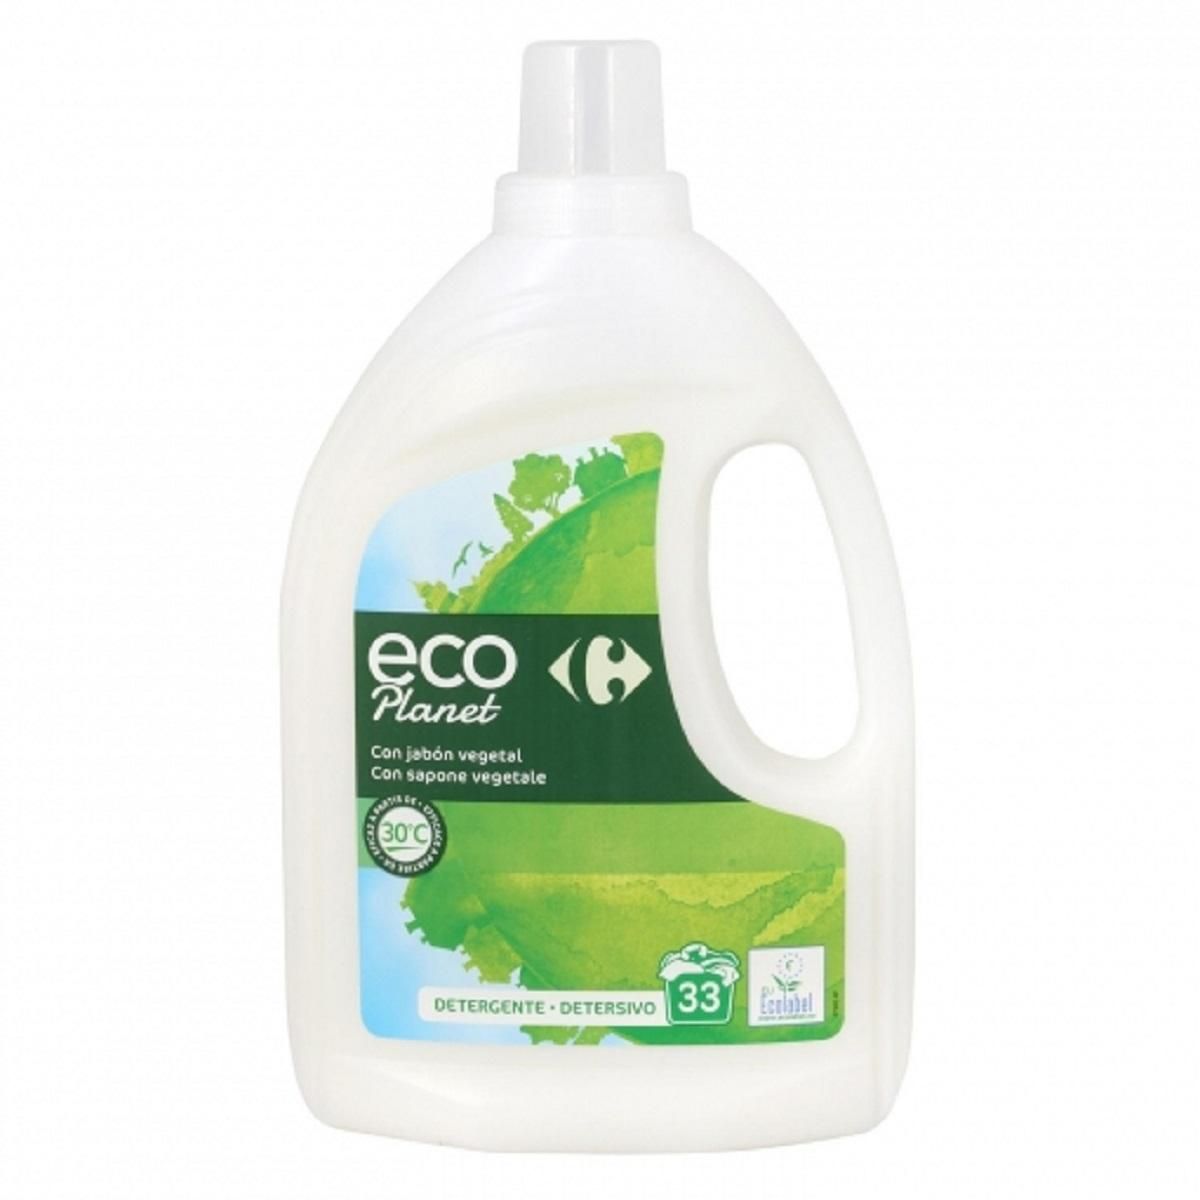 Los diez mejores detergentes según la OCU - Levante-EMV